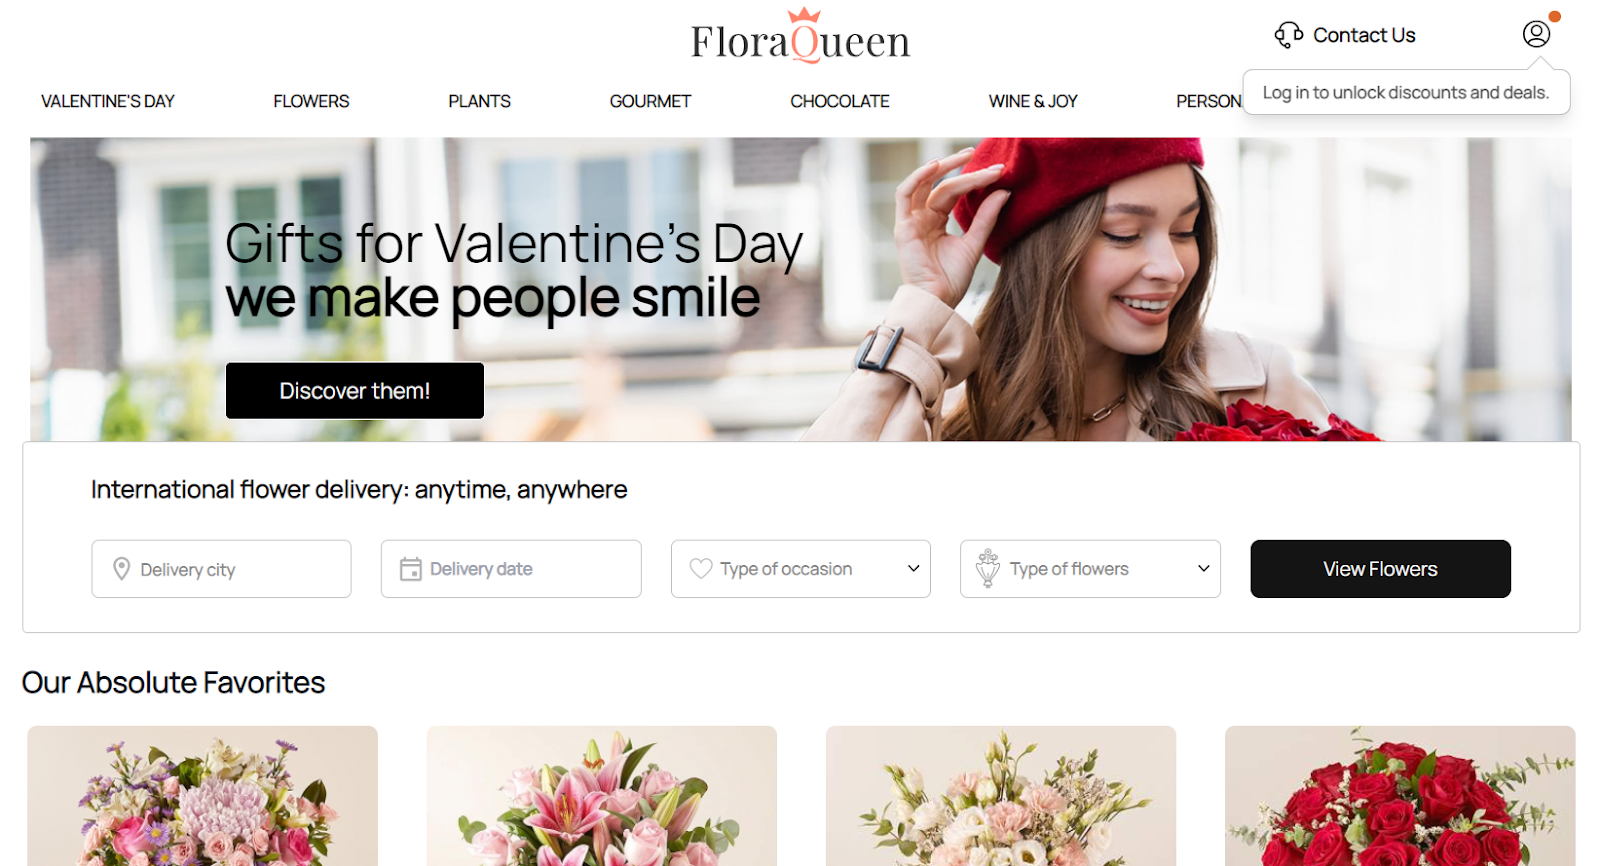 Best florist websites — design example from FloraQueen.